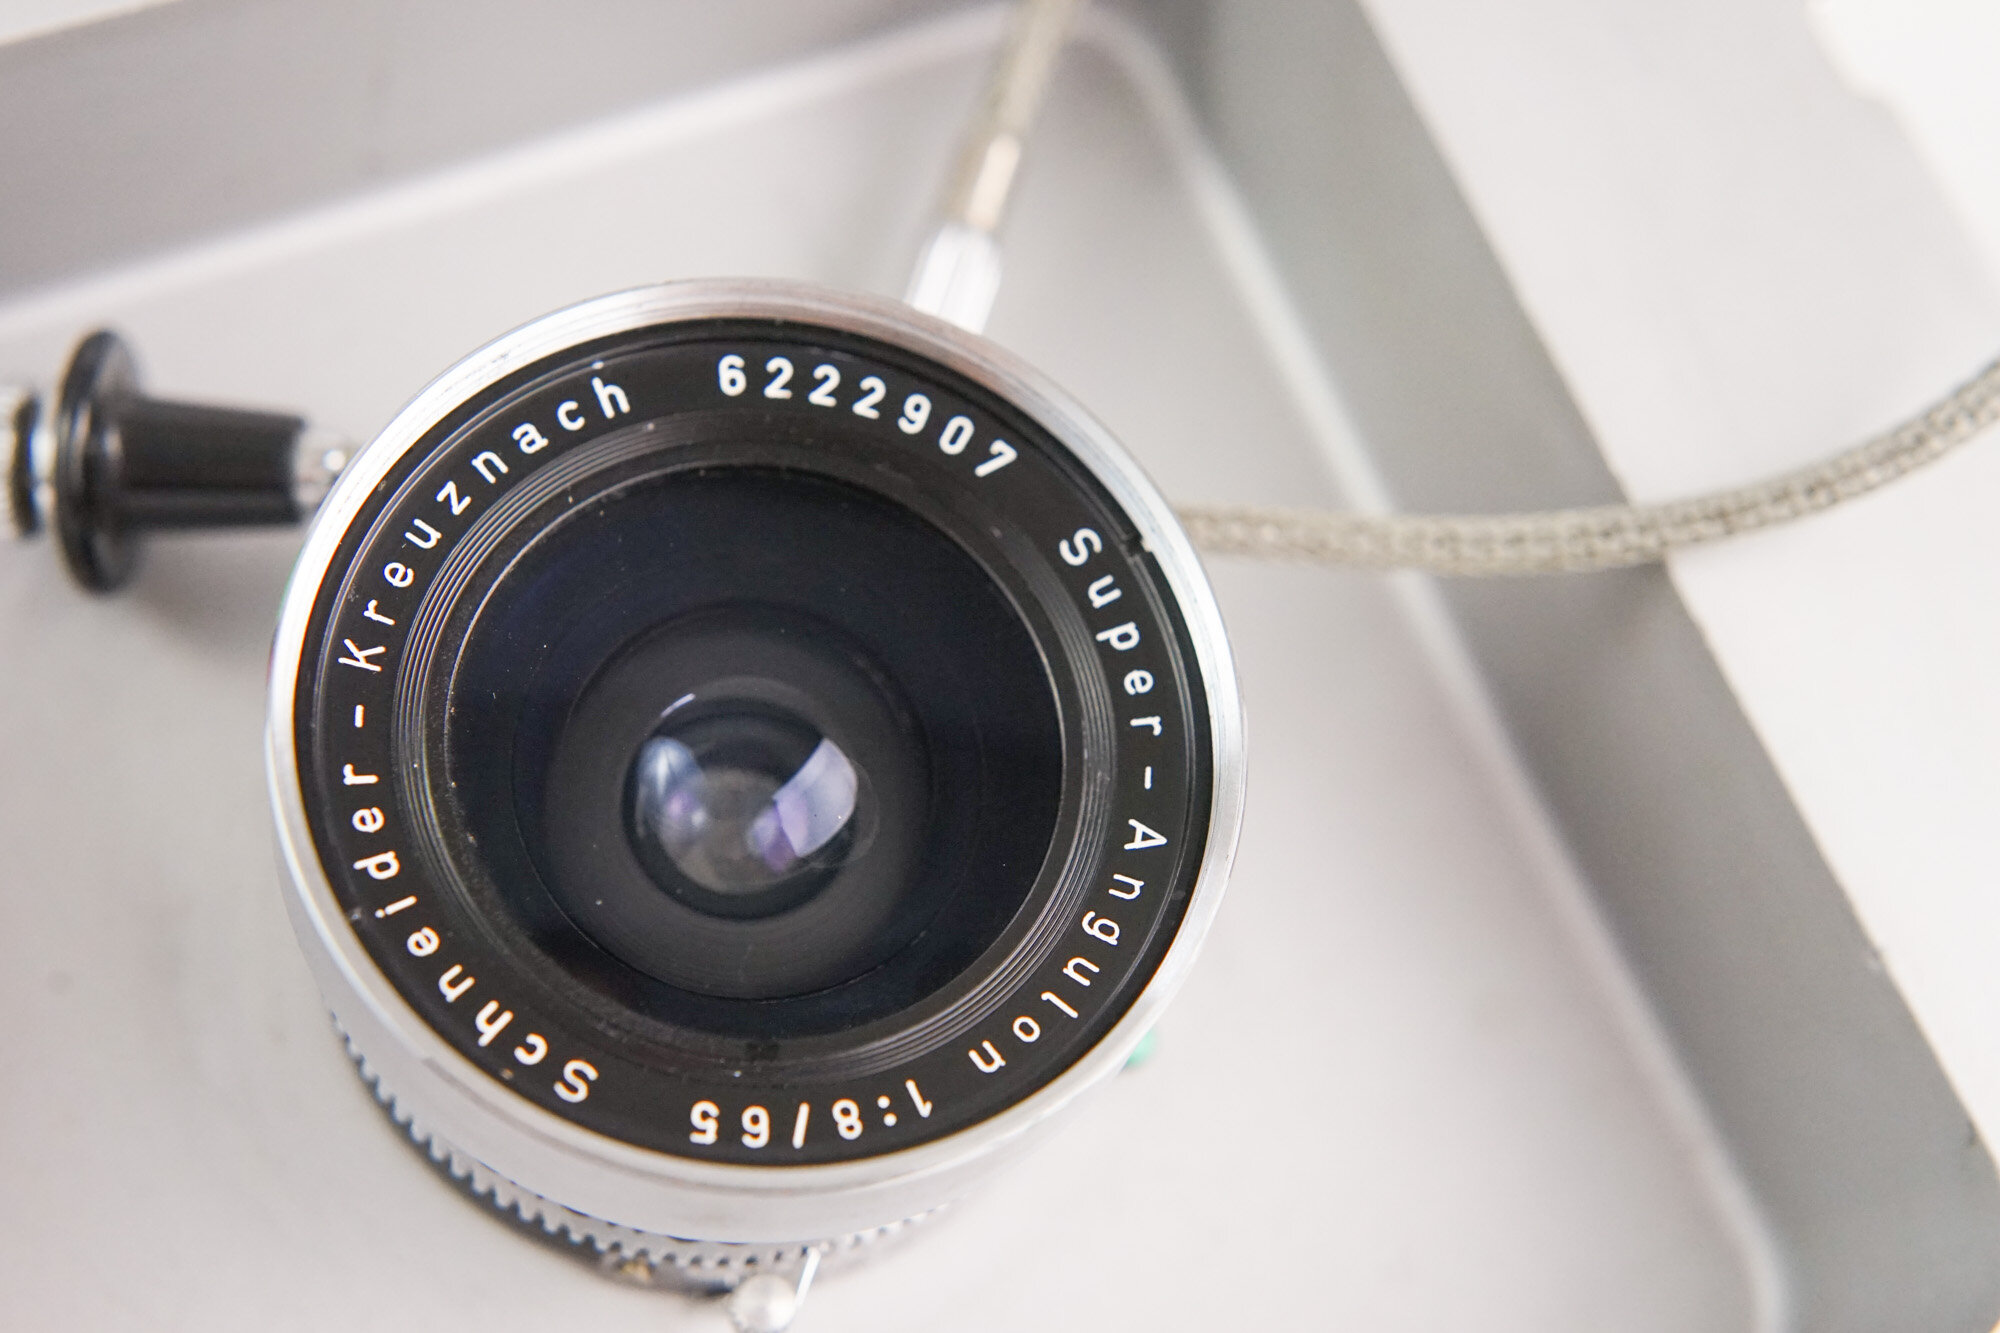 Schneider-Kreuznach 65mm f8 Super-Angulon Lens with Synchro-Compur Shutter 